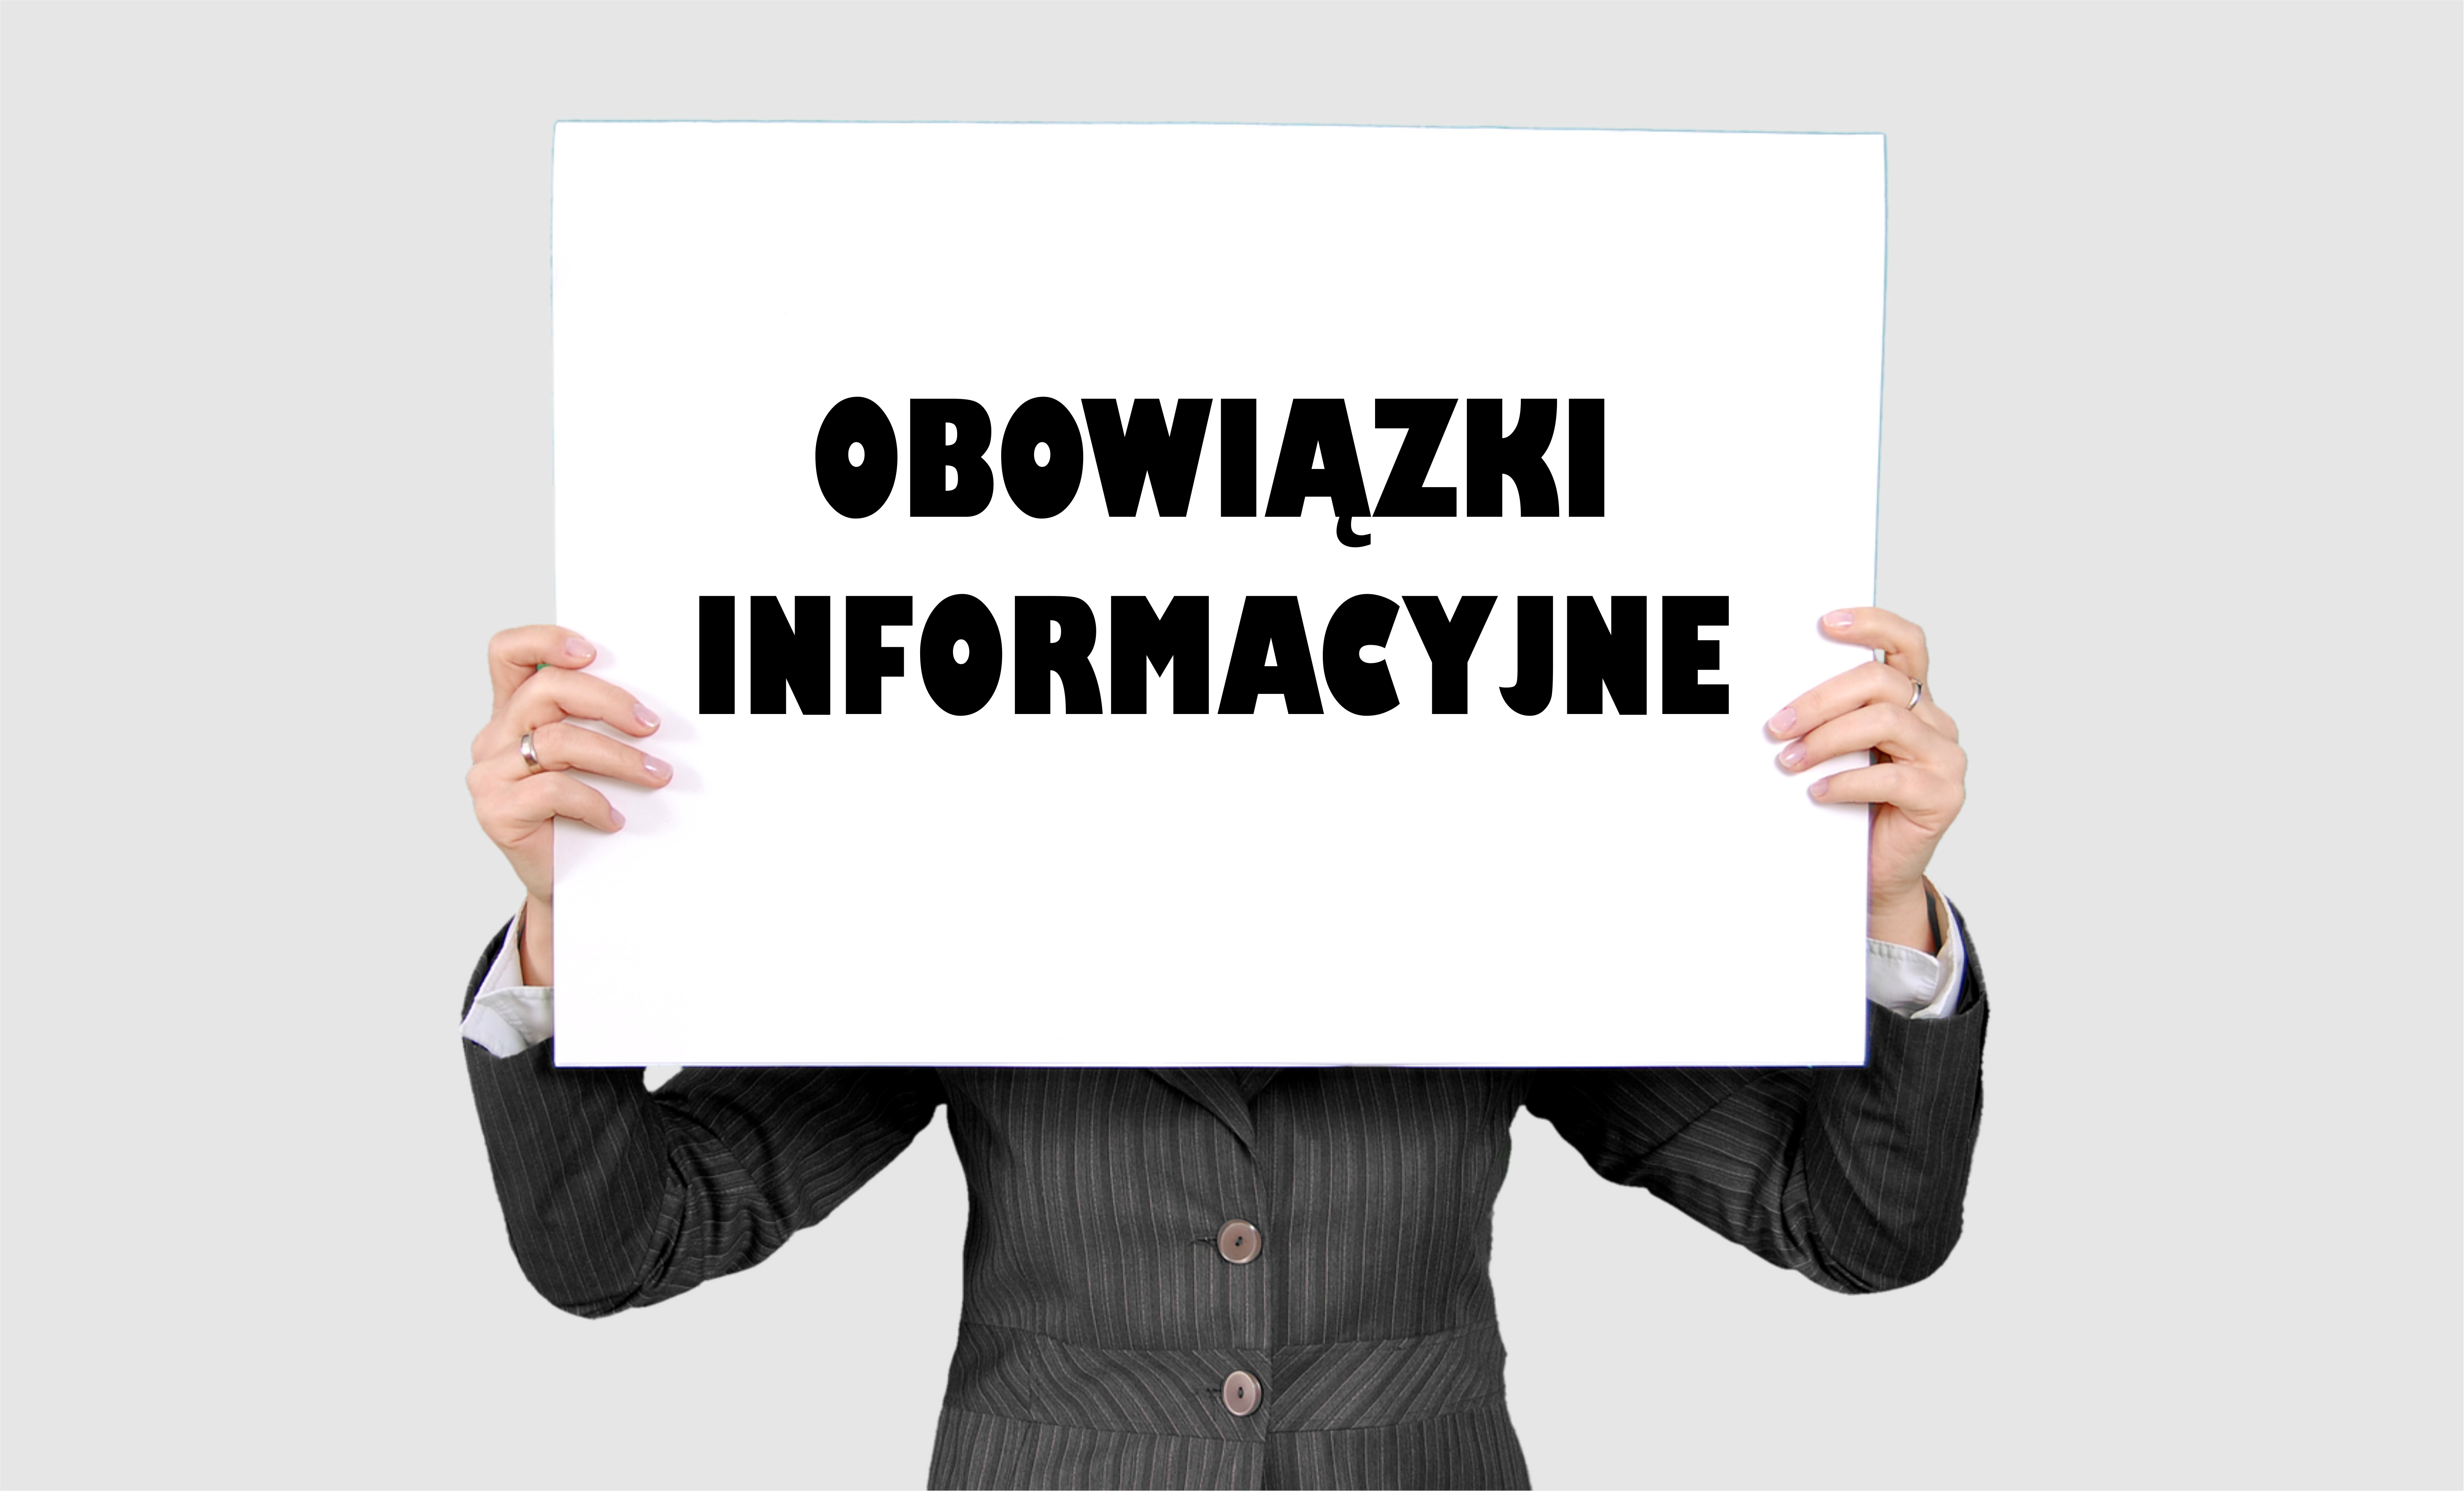 Obrazek z napisem "Obowiązki informacyjne" - modyfikacja obrazka z pixabay.com autorstwa "jarmoluk"